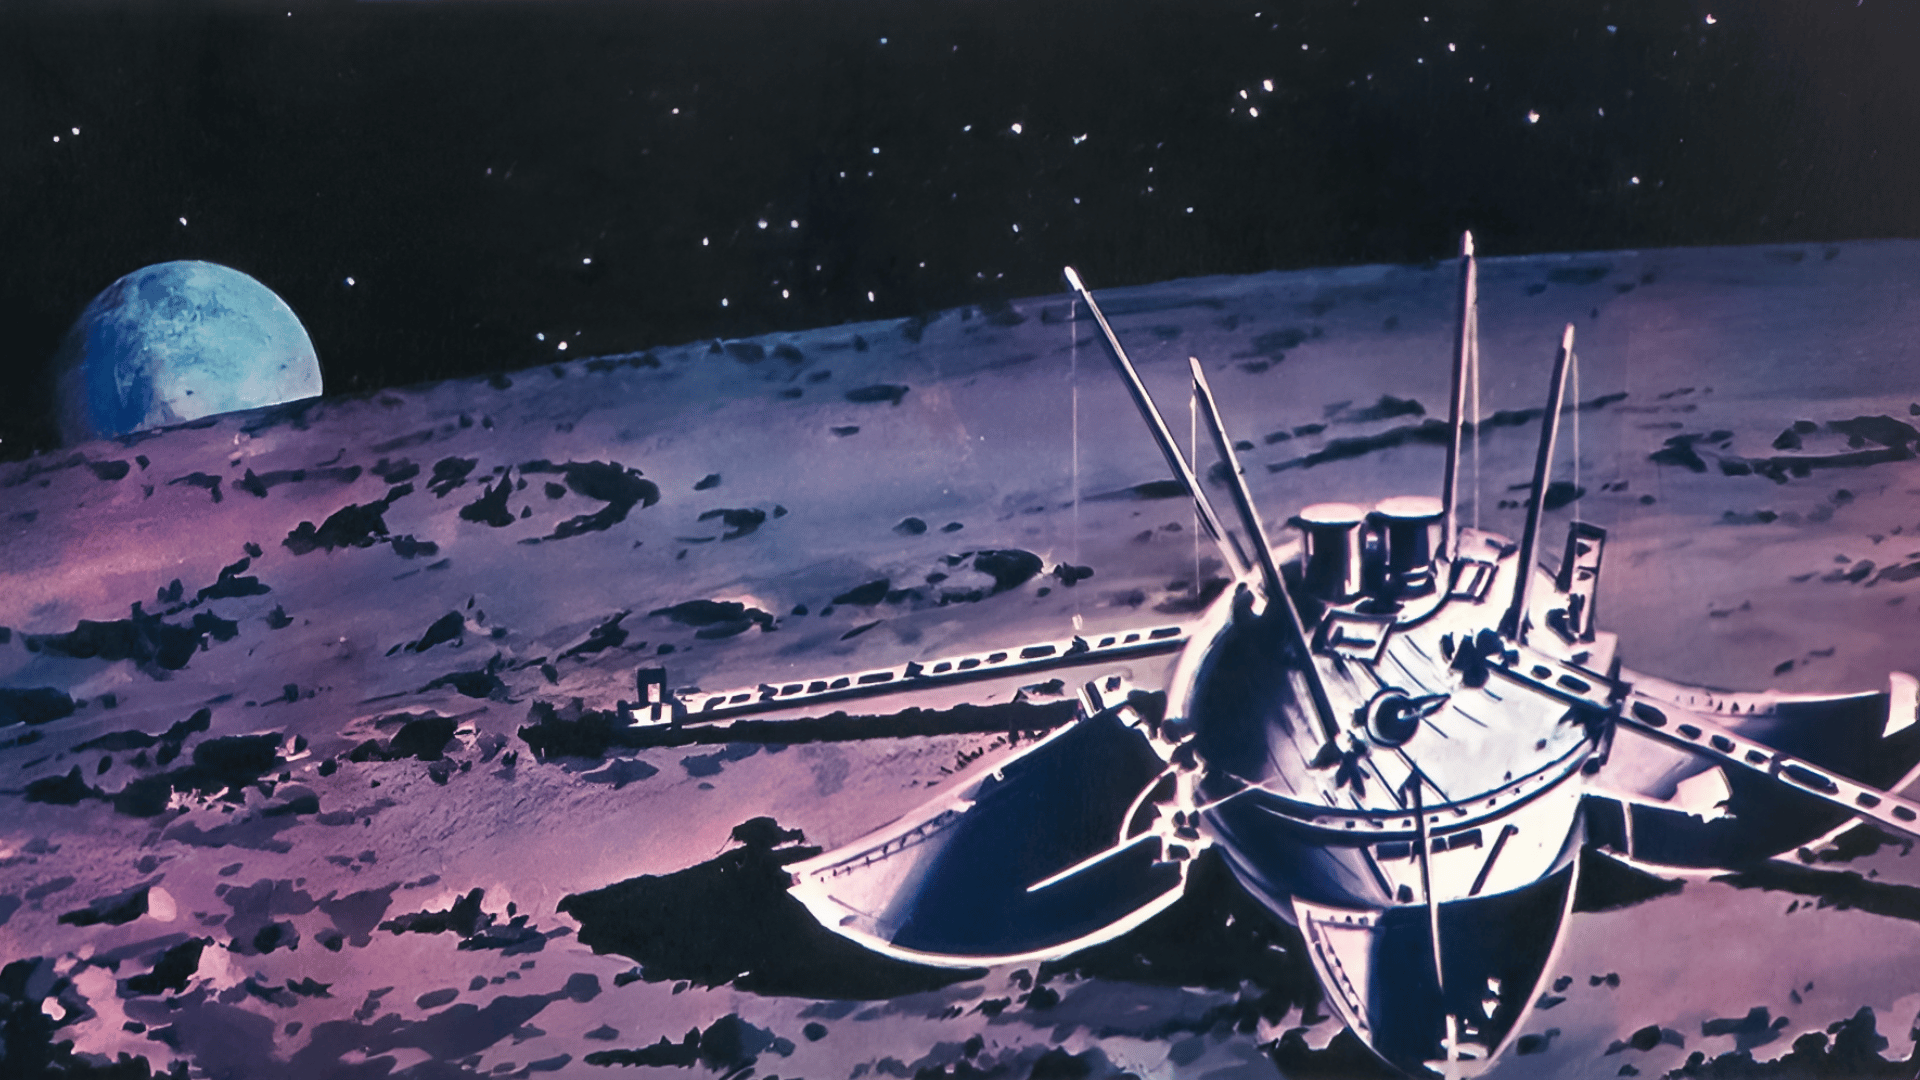 Космические аппараты на луне. Луна-9 автоматическая межпланетная станция. Советская АМС «Луна - 9». 1966 — СССР осуществил успешный запуск межпланетной станции «Луна-13».. Станция Луна-9 1966 года.